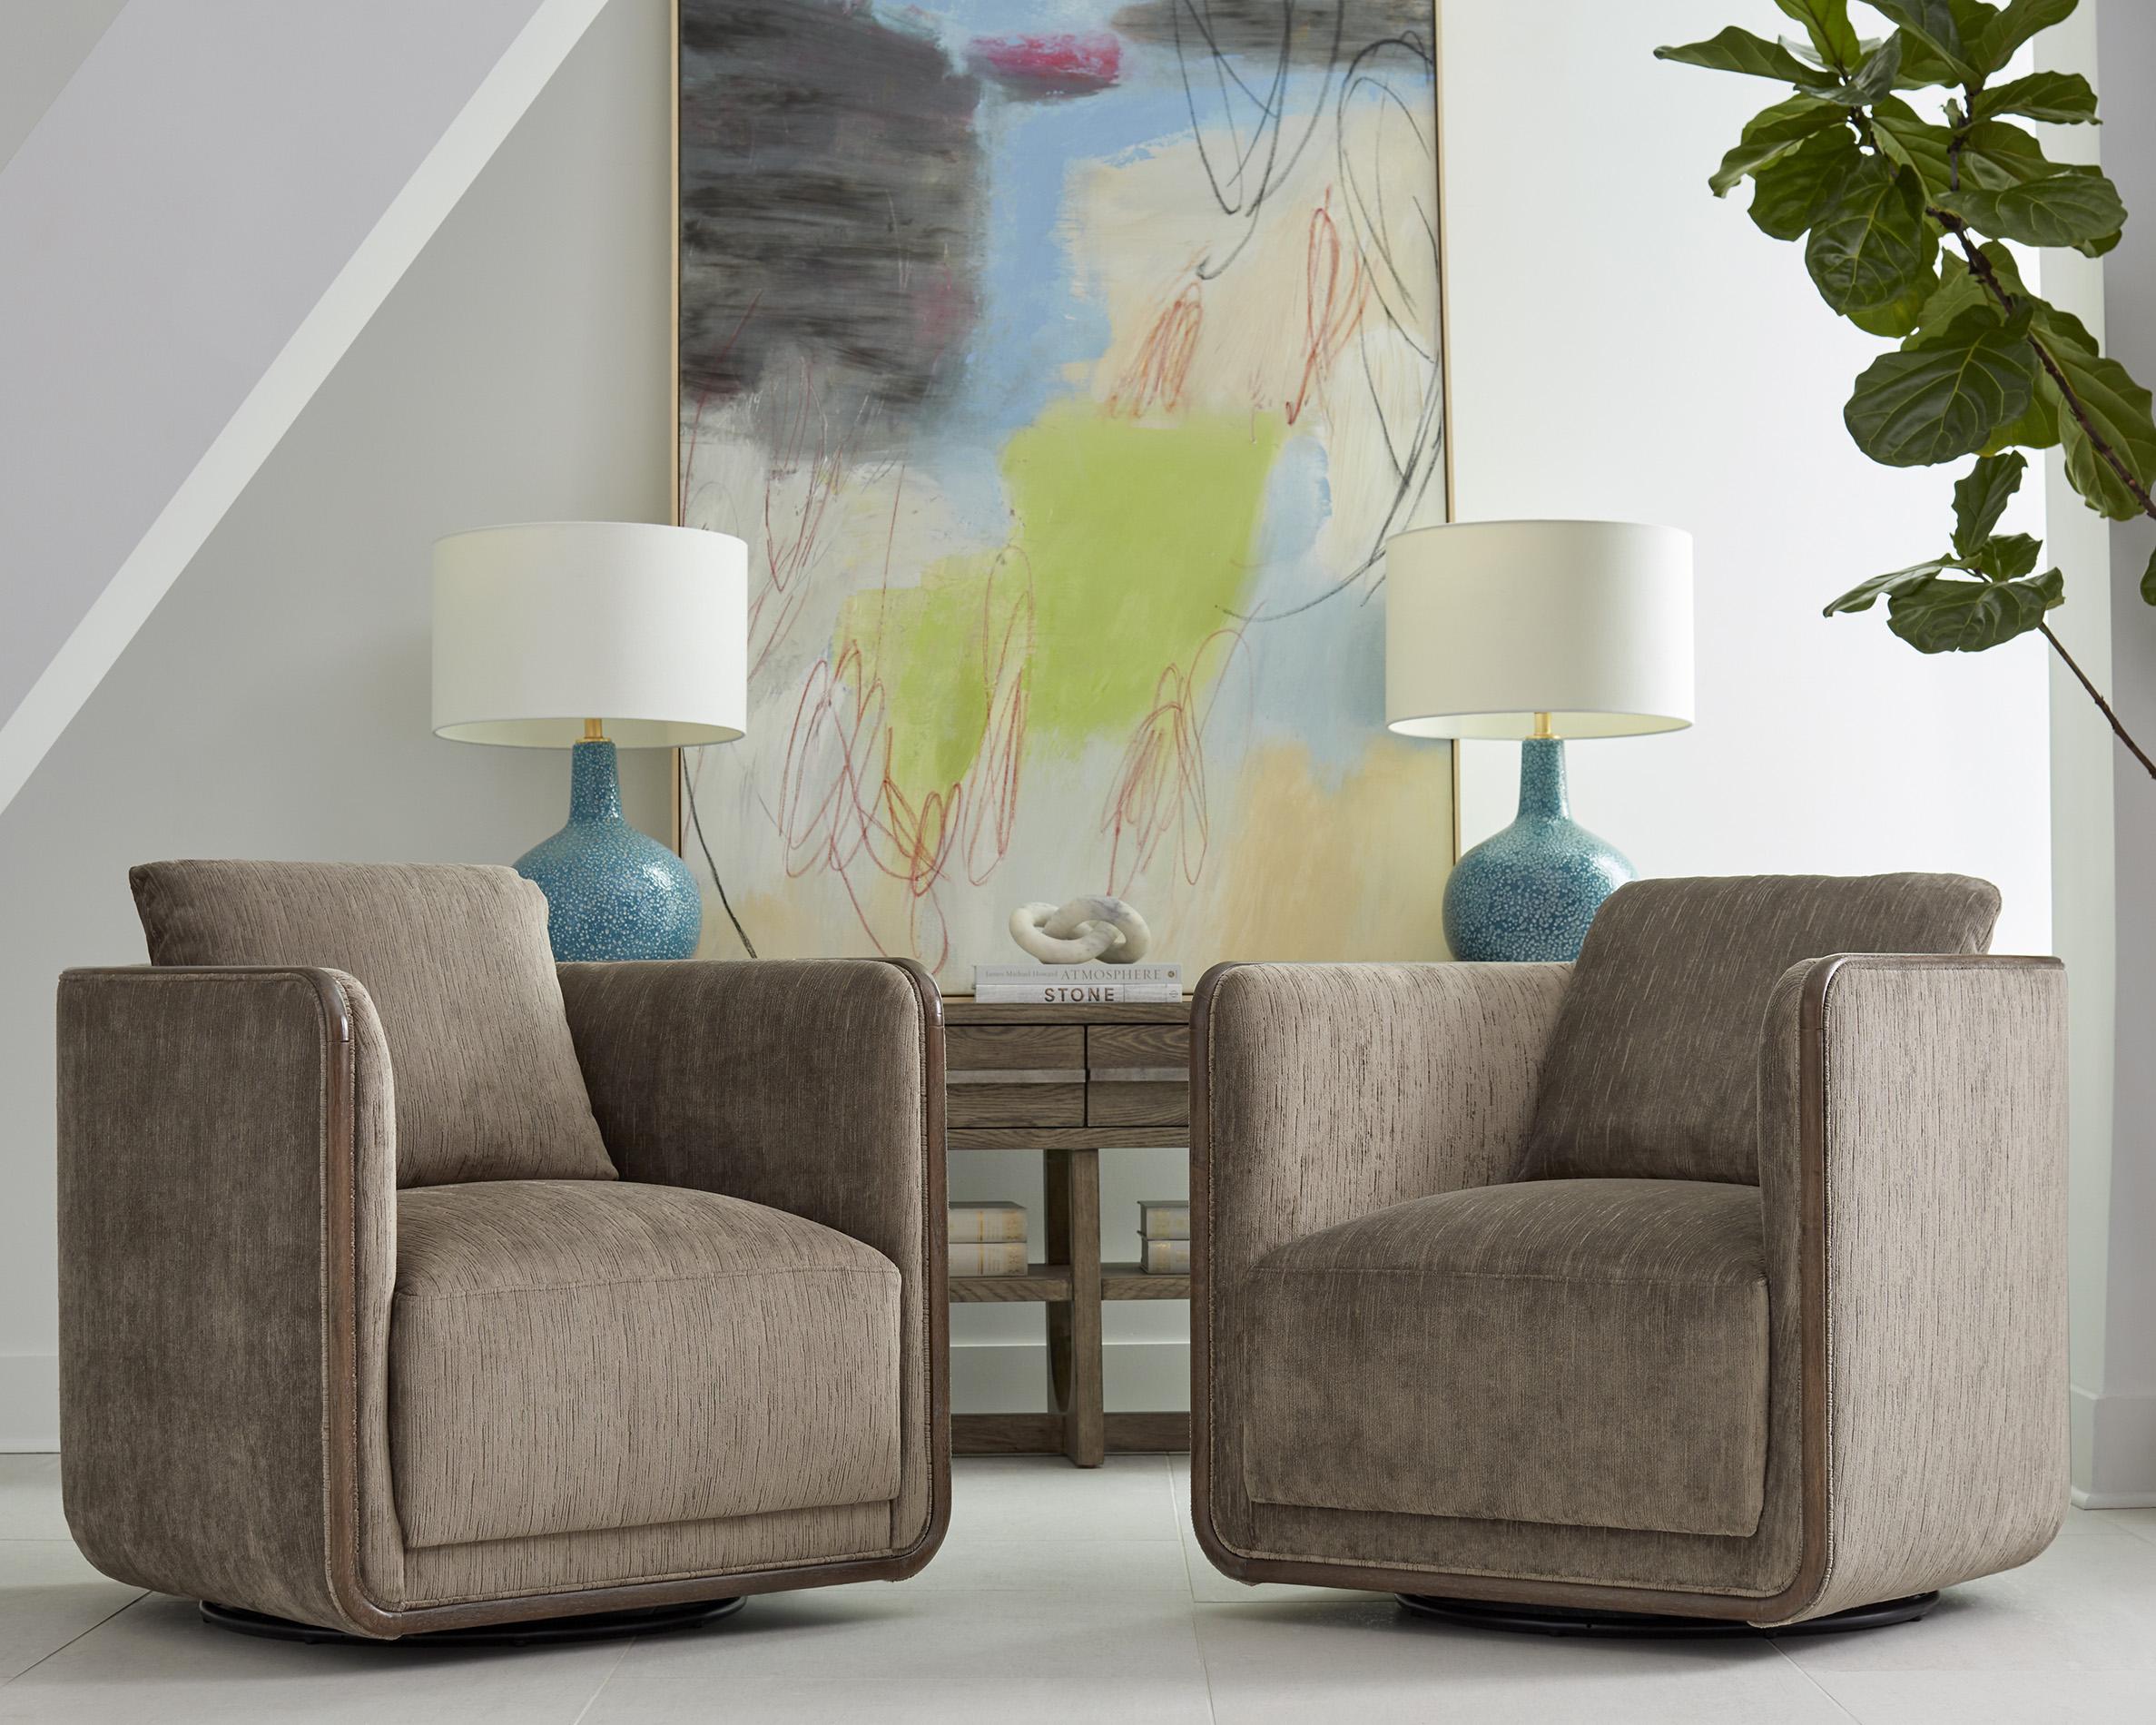 

    
a.r.t. furniture Sagrada 764516-5303FJ Swivel Chair Gray 764516-5303FJ
